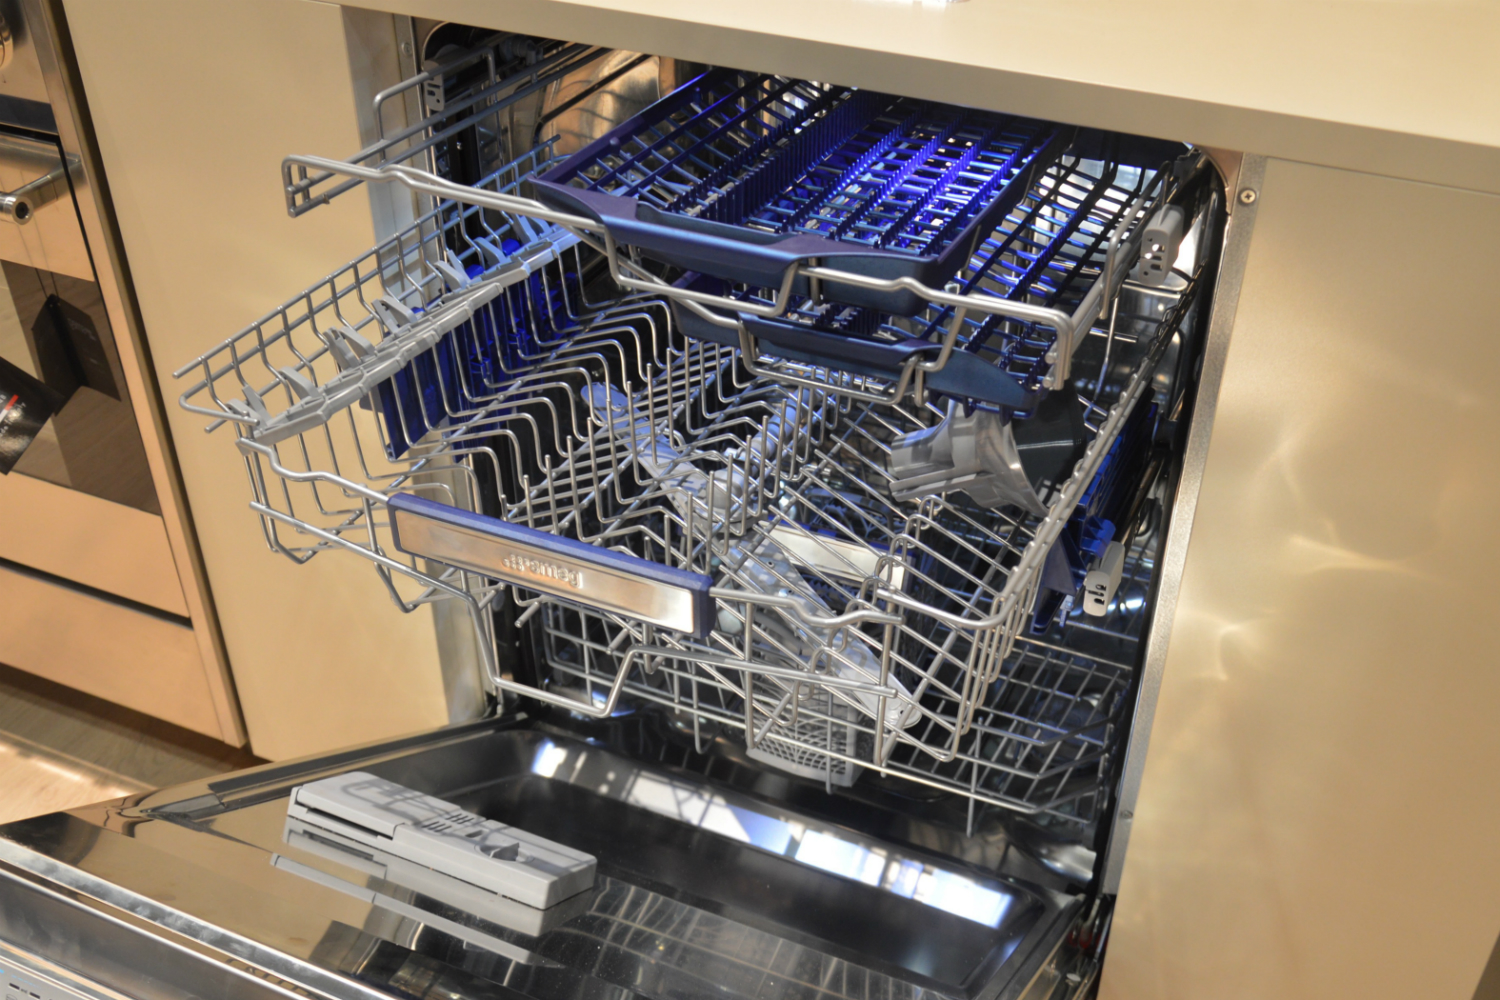 appliance trends kbis 2017 smeg third rack dishwasher 4